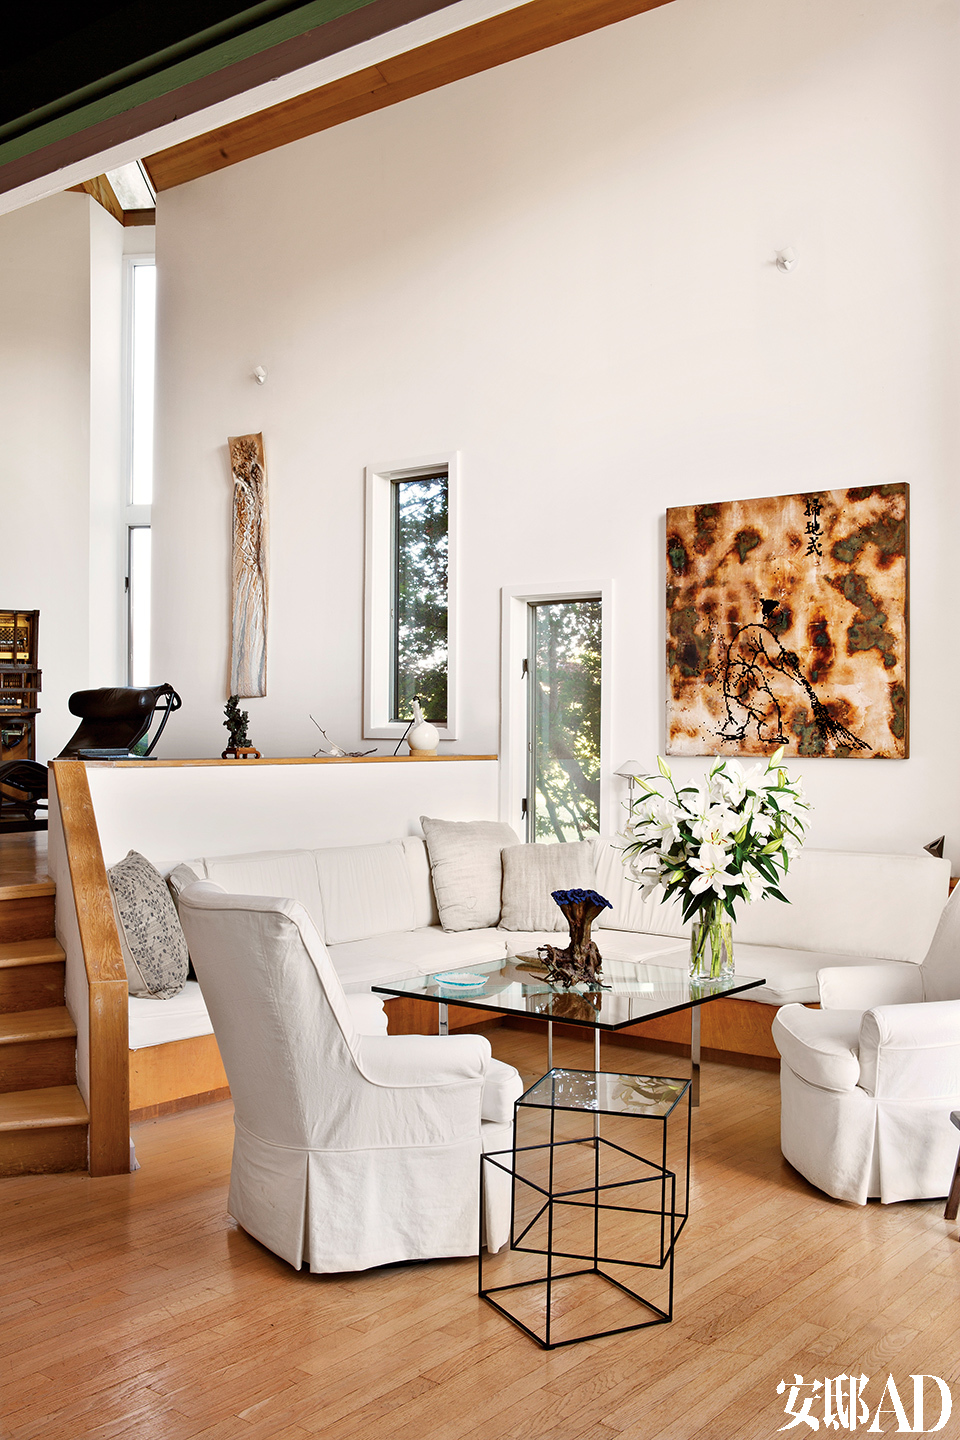 黑色边桌由Nendo设计，Capppellini生产制造。塞罗那咖啡桌是建筑大师密斯·凡·德·罗的经典设计，由Knoll生产制造。白色家具只为衬底，窗外的婆娑树影与墙上的艺术品互为呼应。